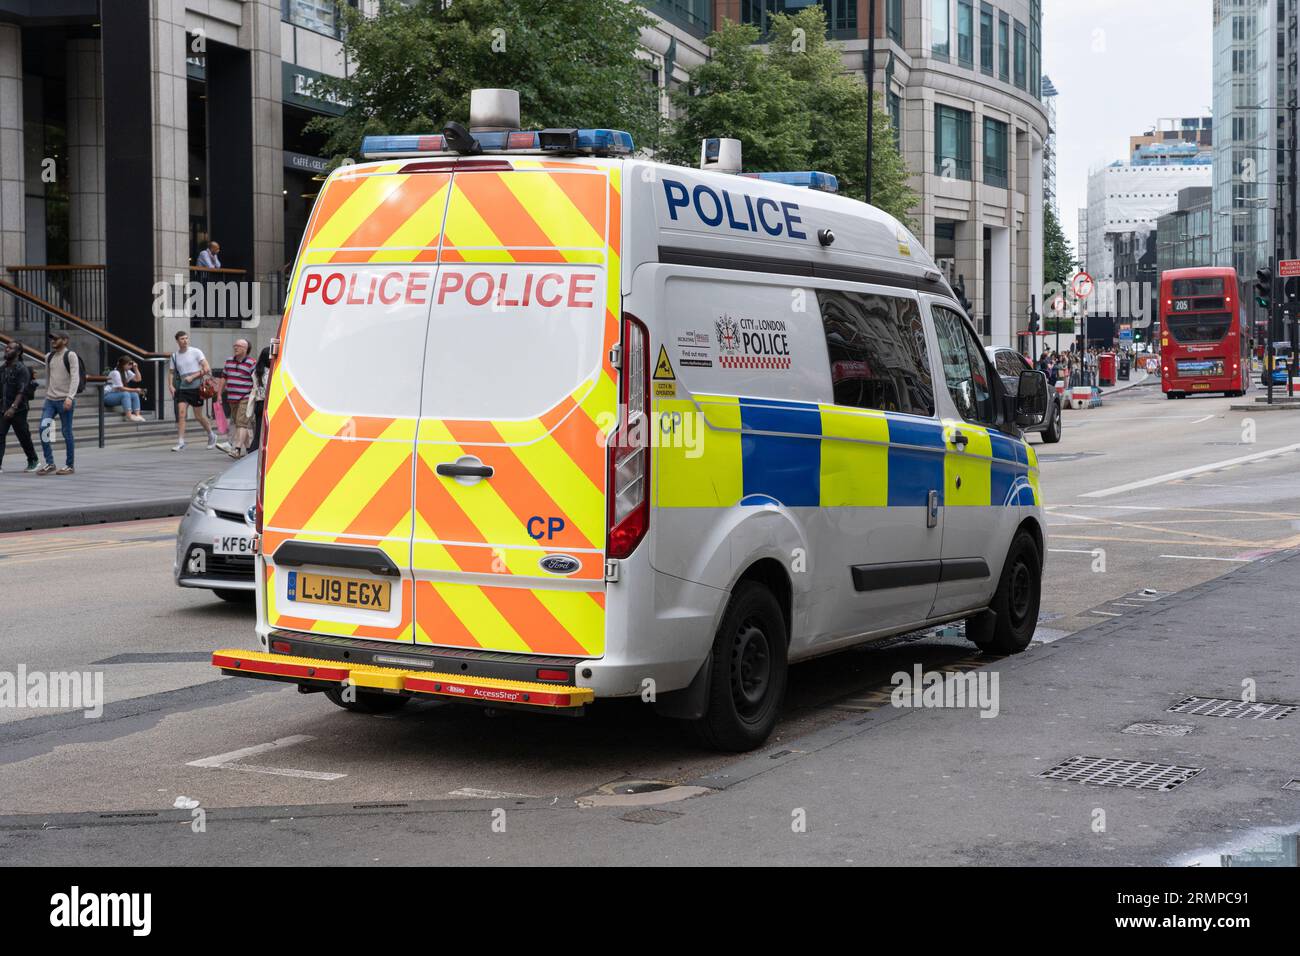 Un fourgon de police garé sur l'A10 à Londres - qui fait partie de la police de la City of London. Angleterre. Concept : taux de criminalité, enquête sur les crimes Banque D'Images